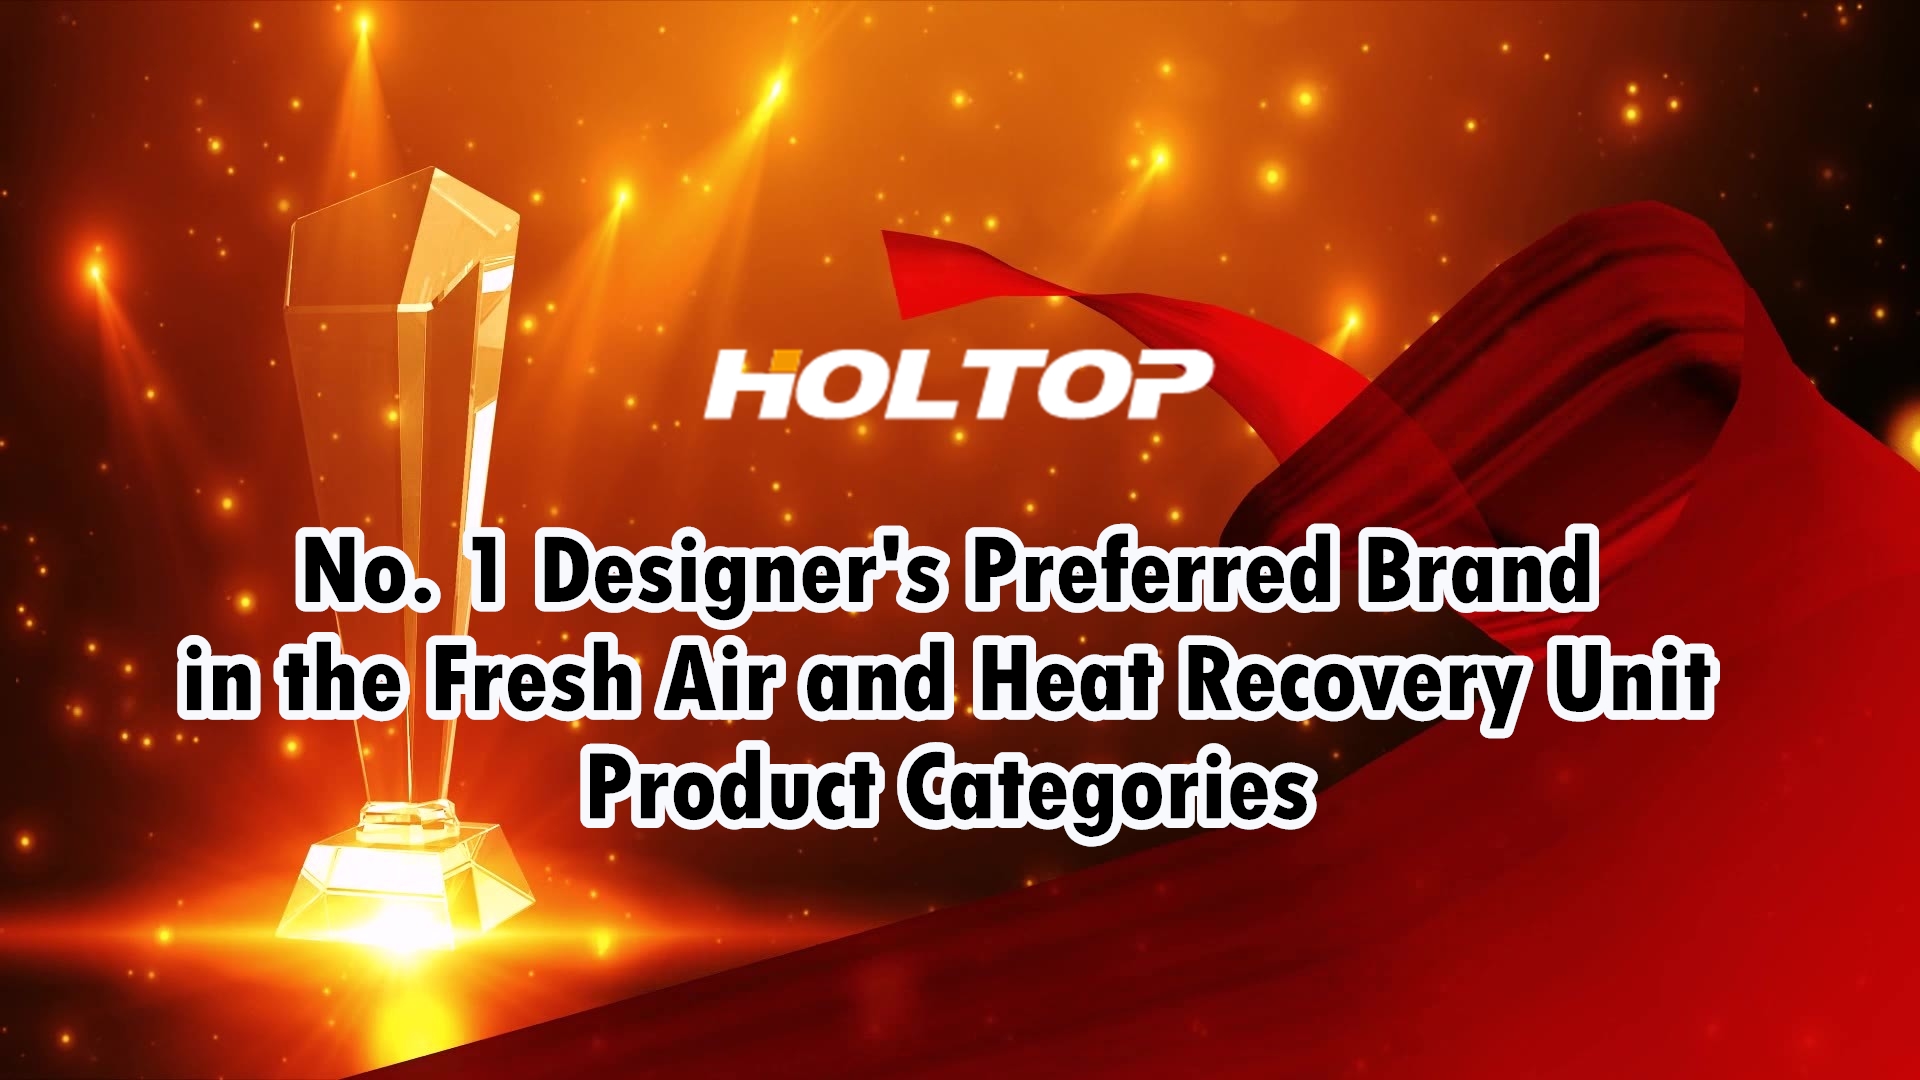 HOLTOP jest preferowaną marką nr 1 wśród projektantów w kategoriach produktów urządzeń do odzysku świeżego powietrza i ciepła na rynku chińskim